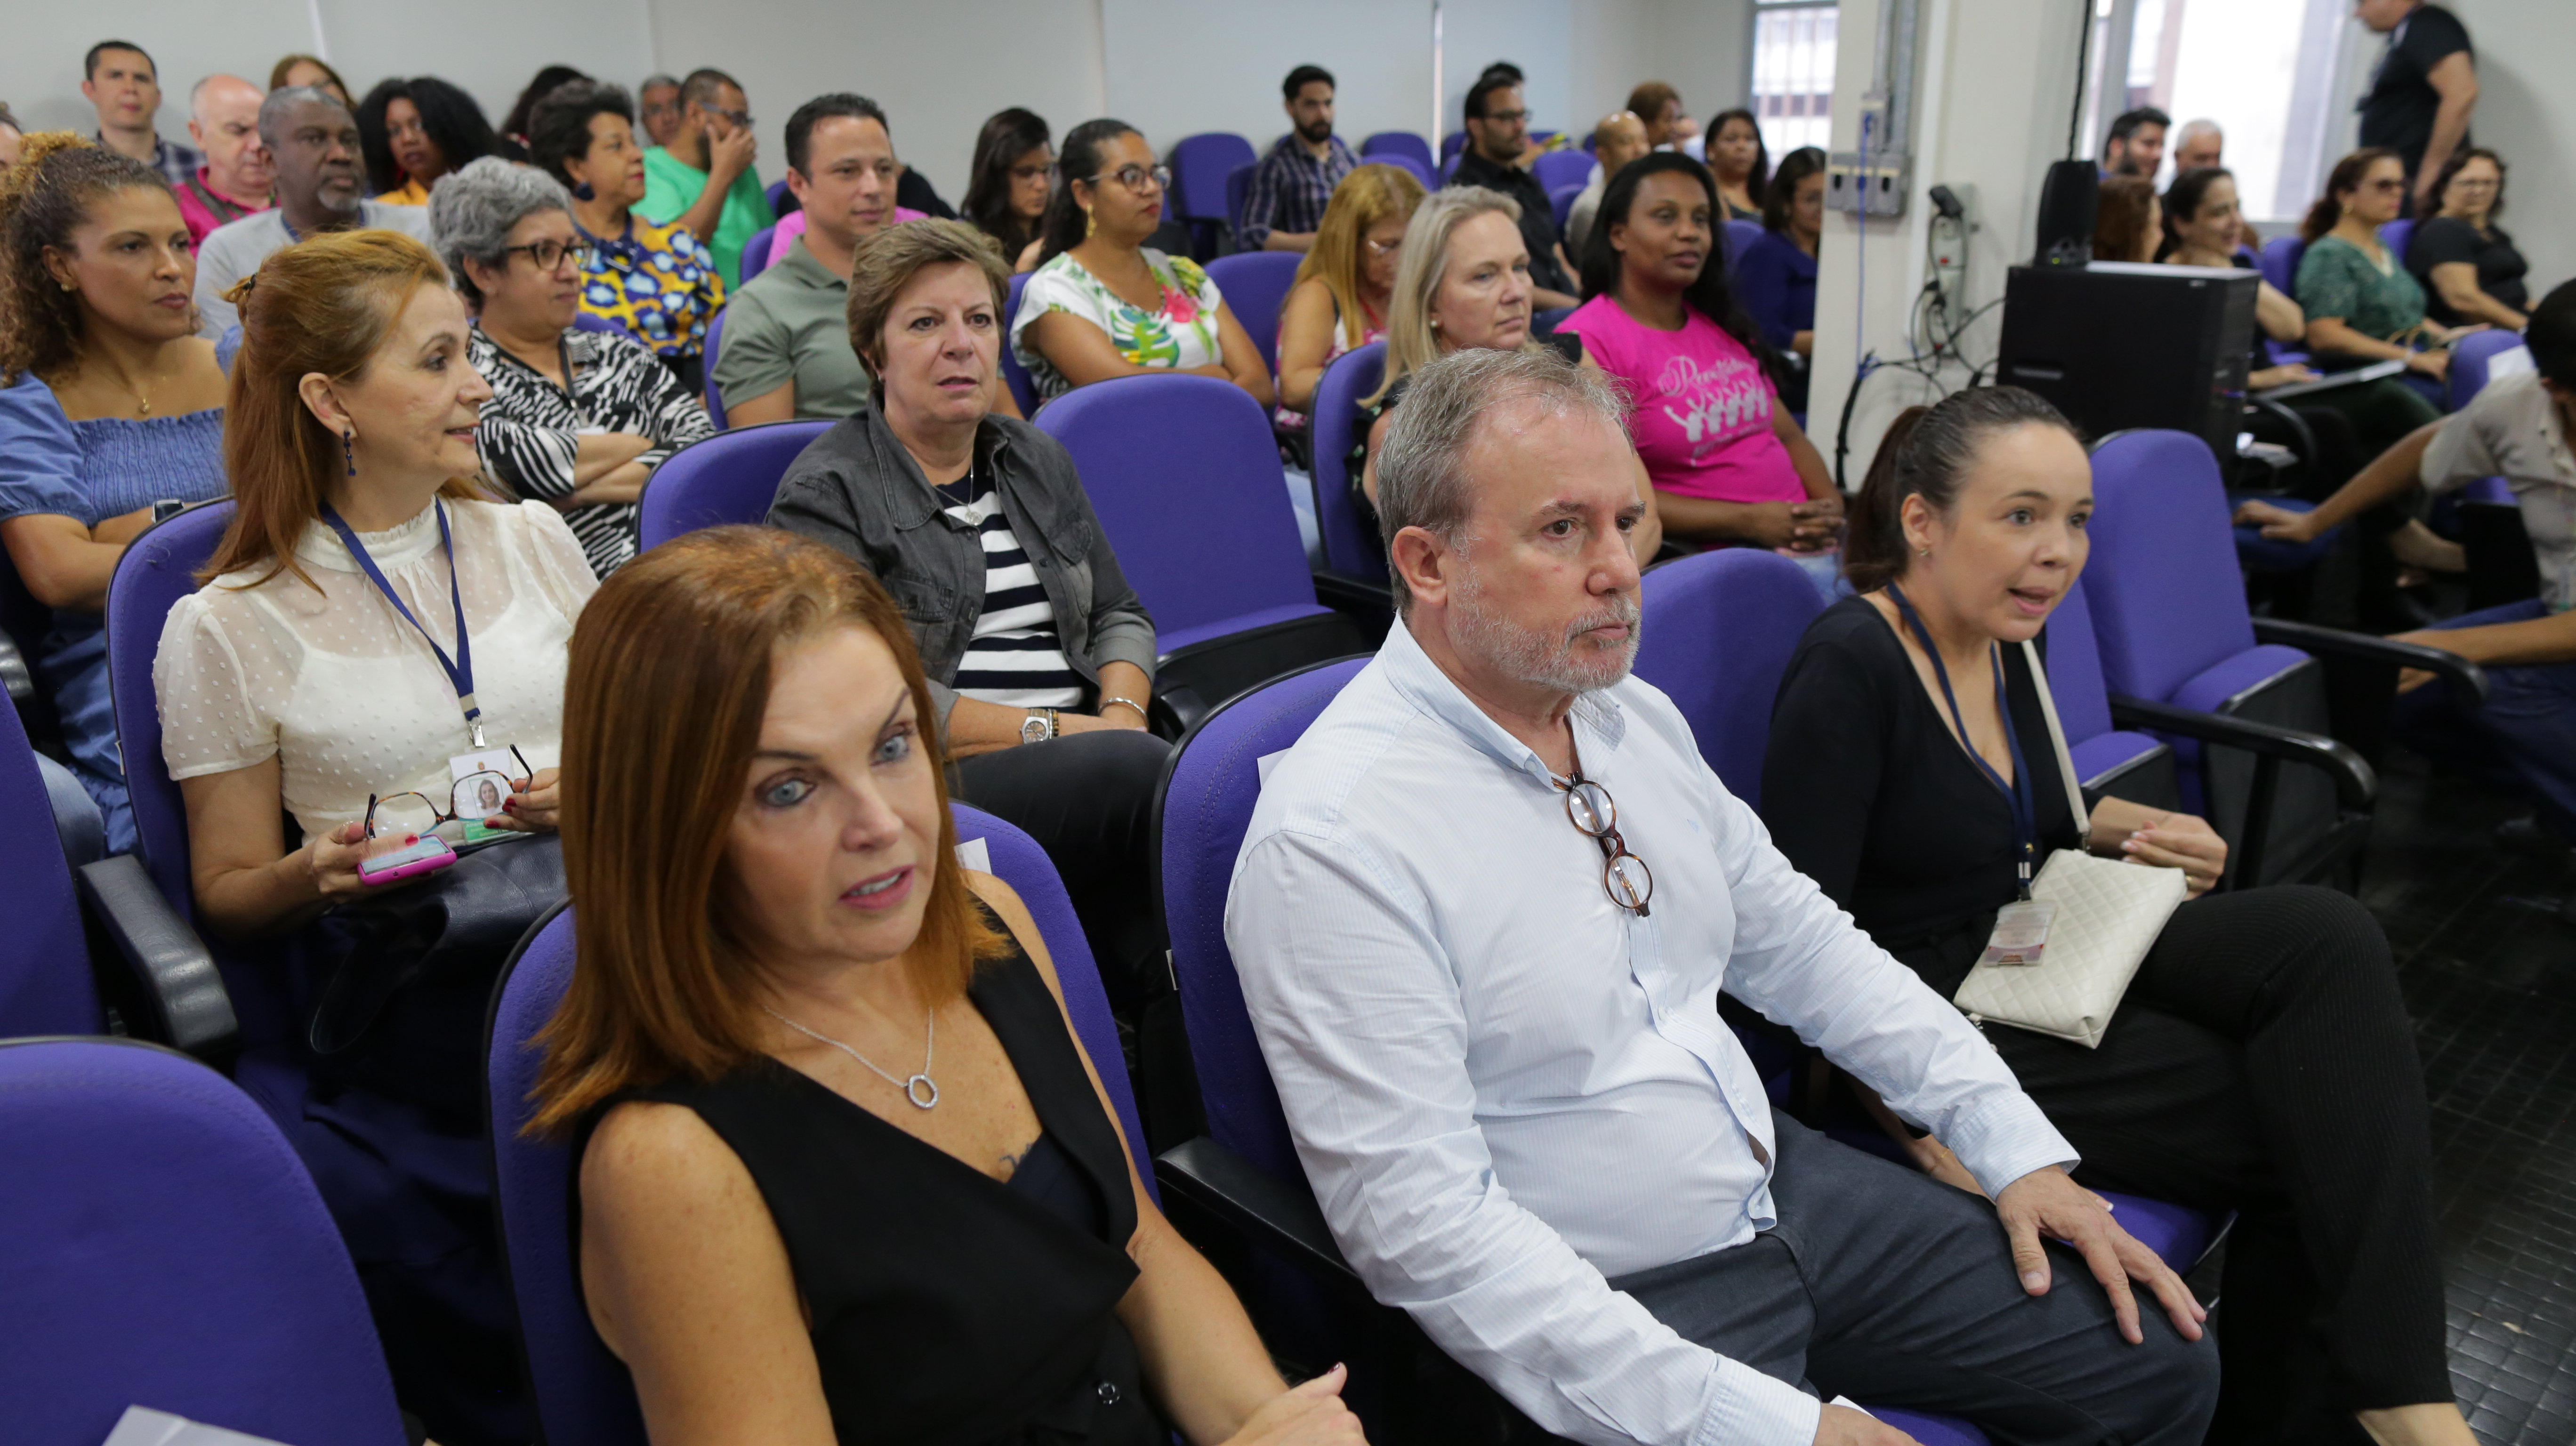 Na imagem estão o Secretário Doutor Luiz Carlos Zamarco e a coordenadora de gestão de pessoas, Patrícia Pallota, atrás deles está o público do evento.